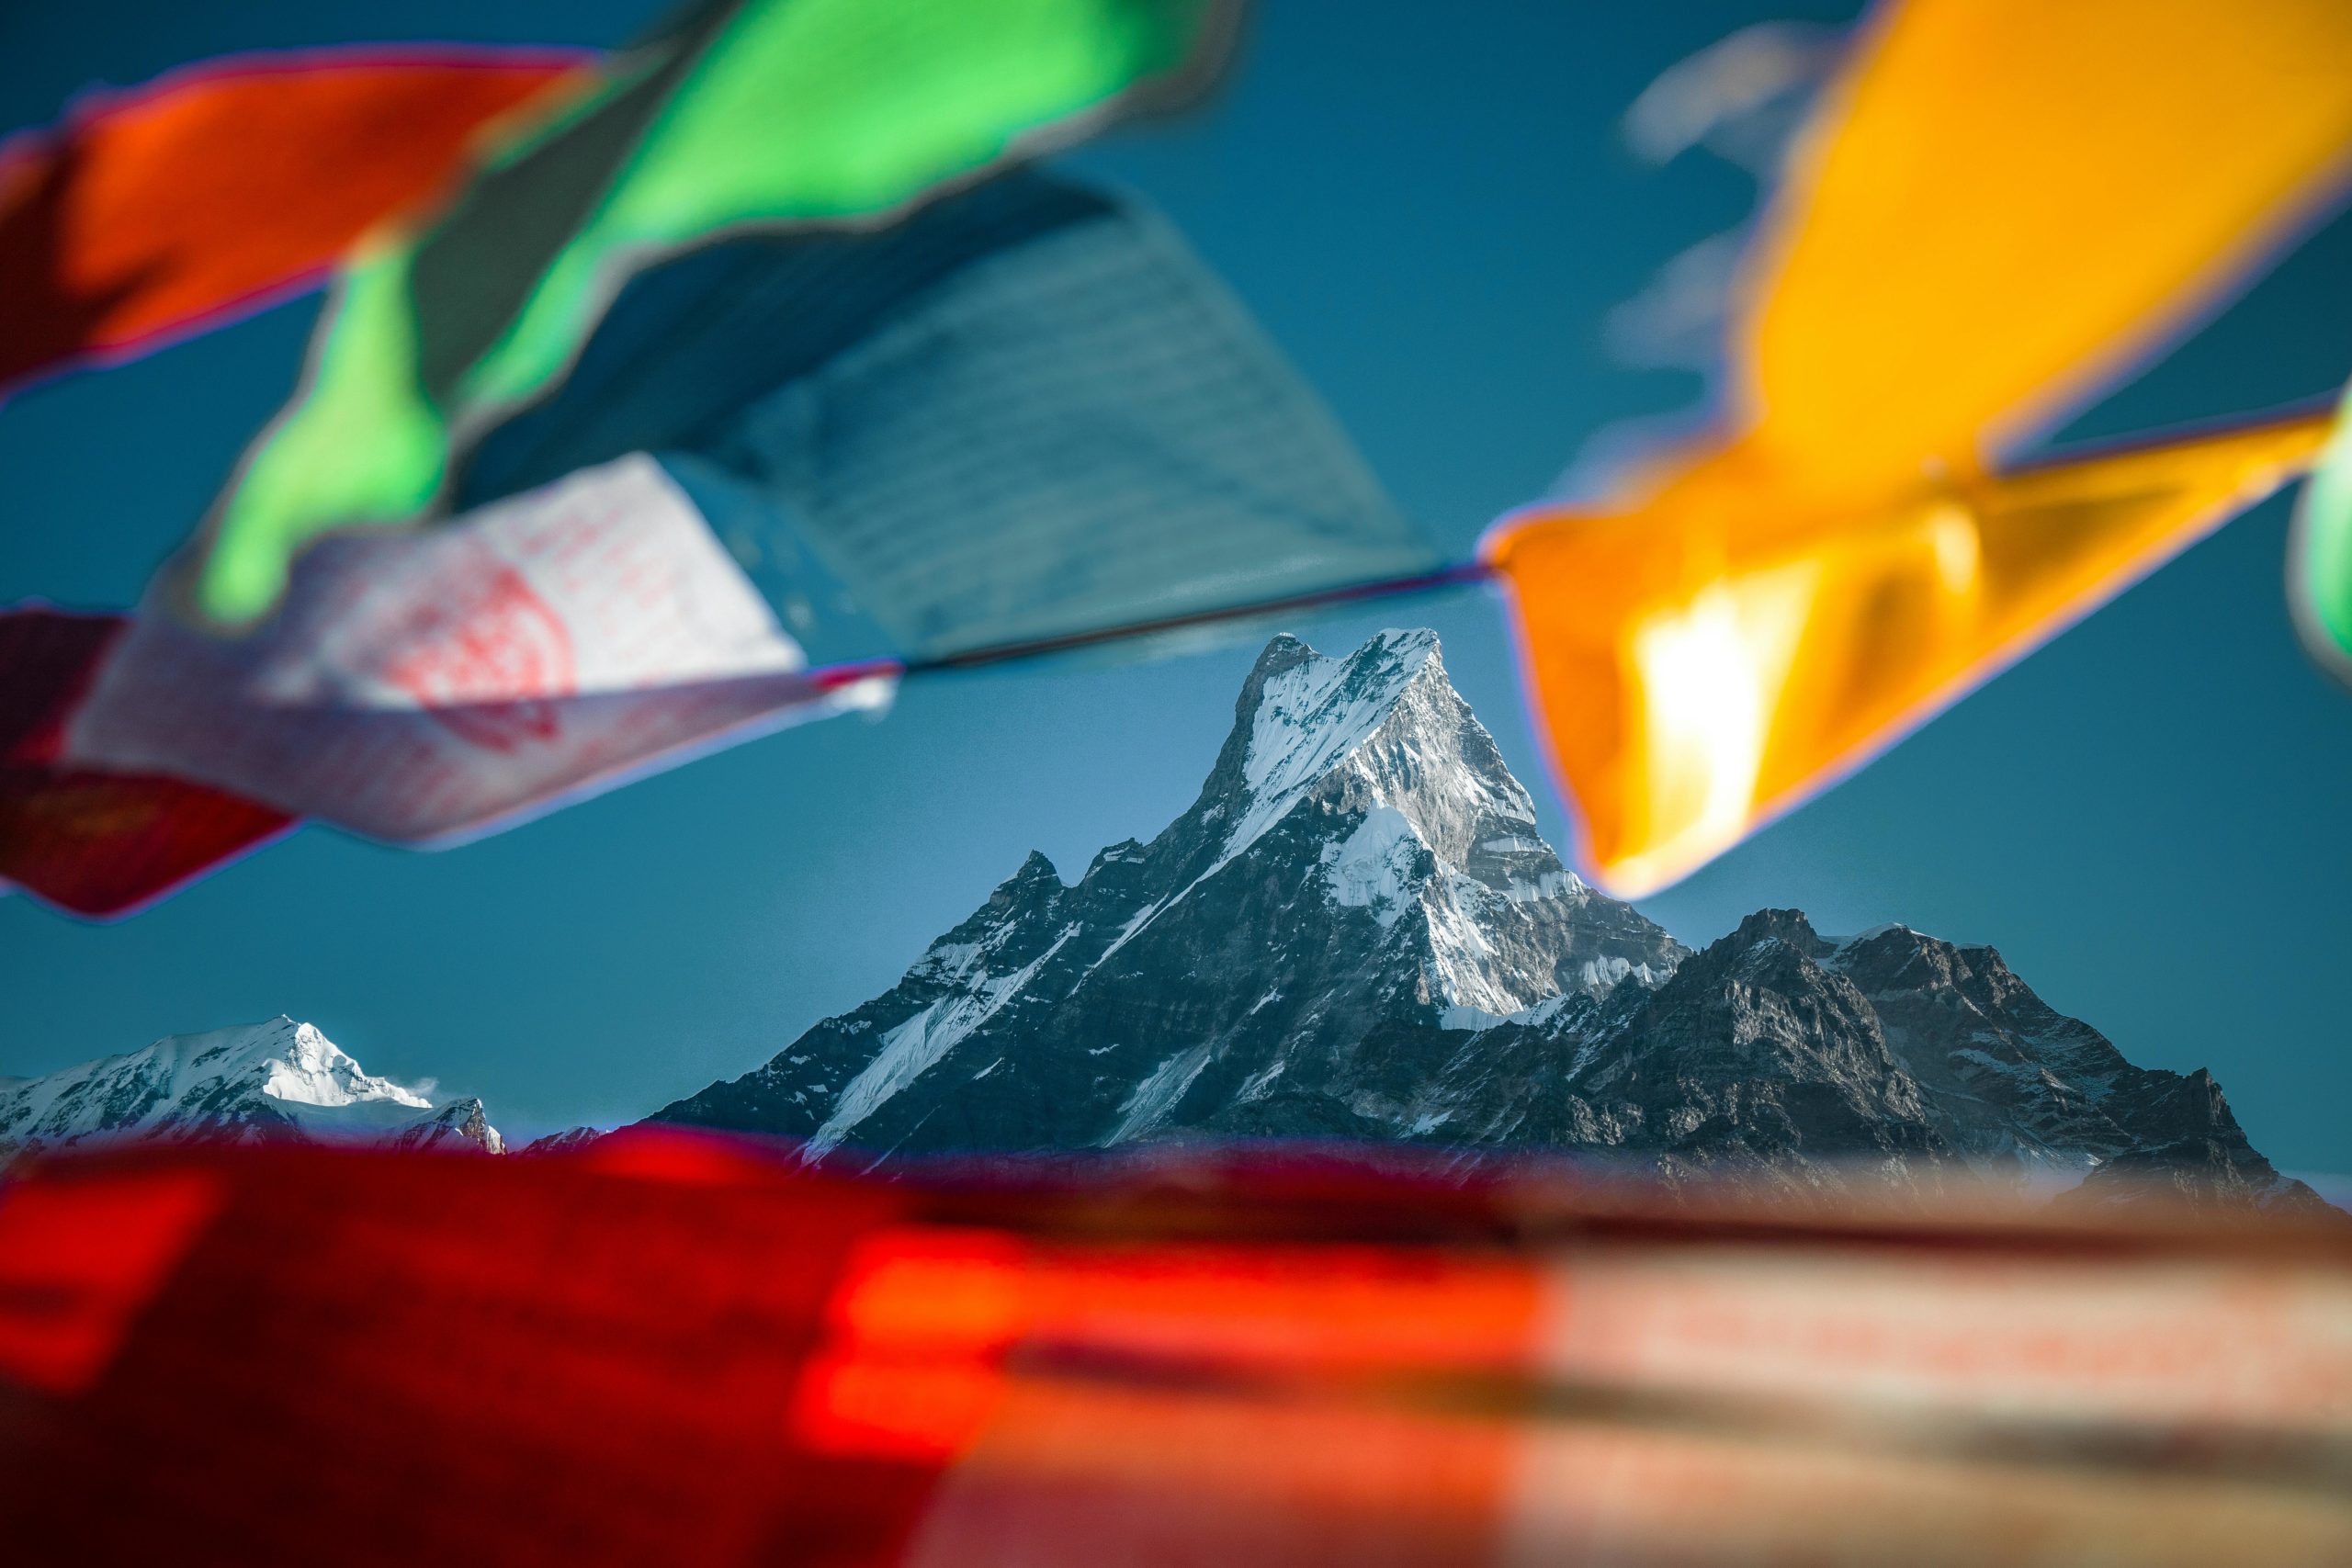 Vue du sommet de l'Everest depuis un point de vue en contrebas. Des tissus népalais flottent au premier plan donnant un côté artistique à la photo.